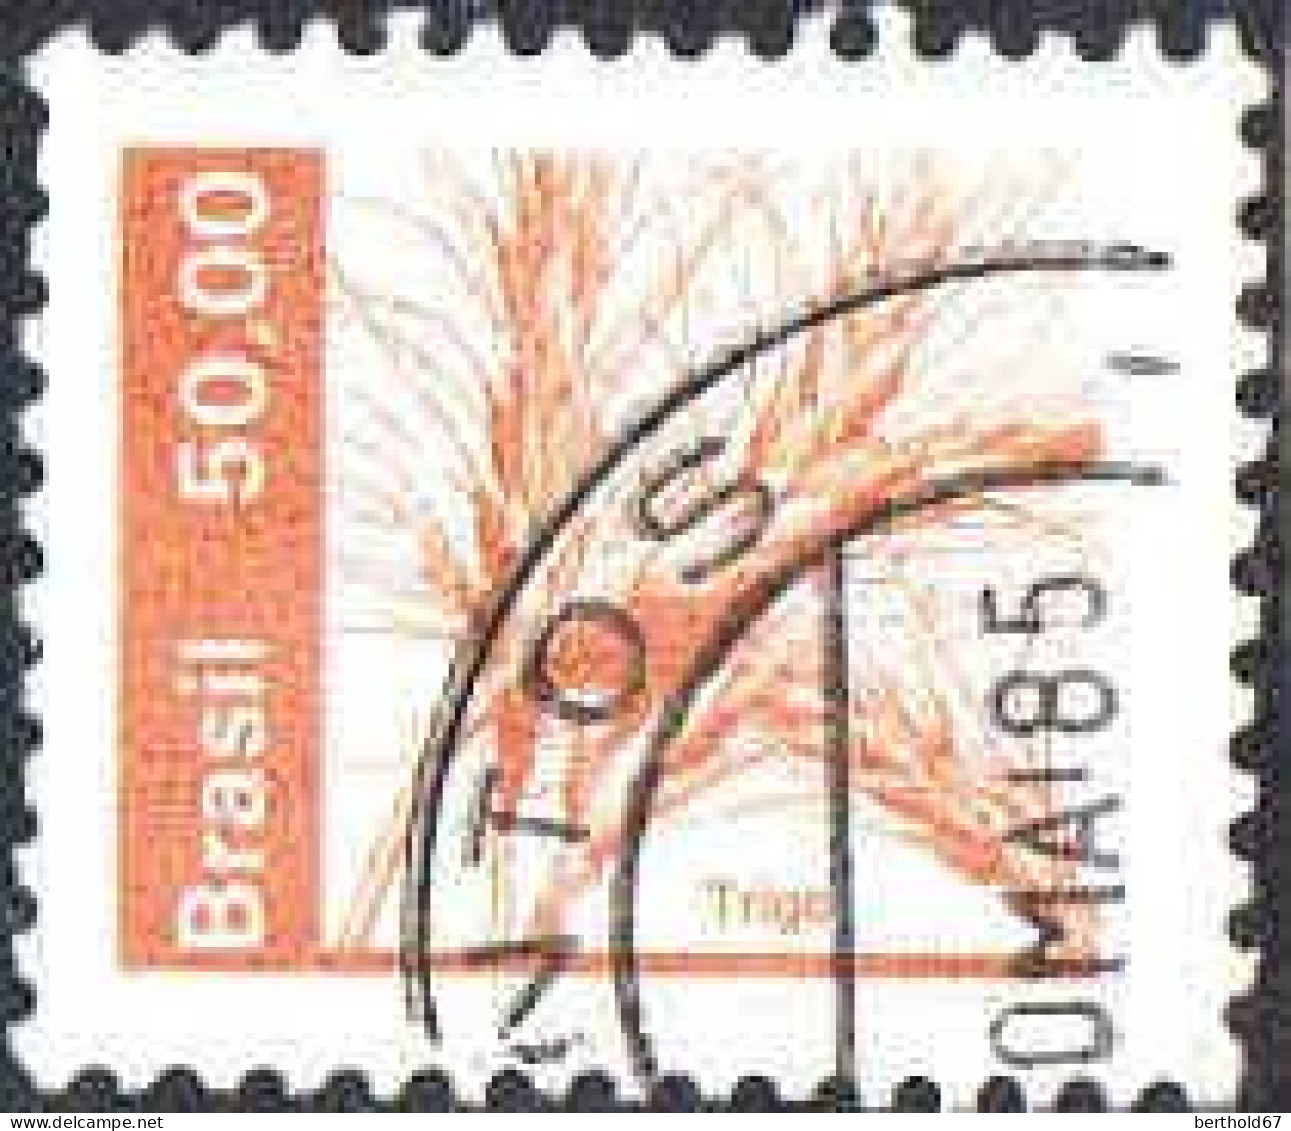 Brésil Poste Obl Yv:1544/1547 Ressources Economiques - Used Stamps